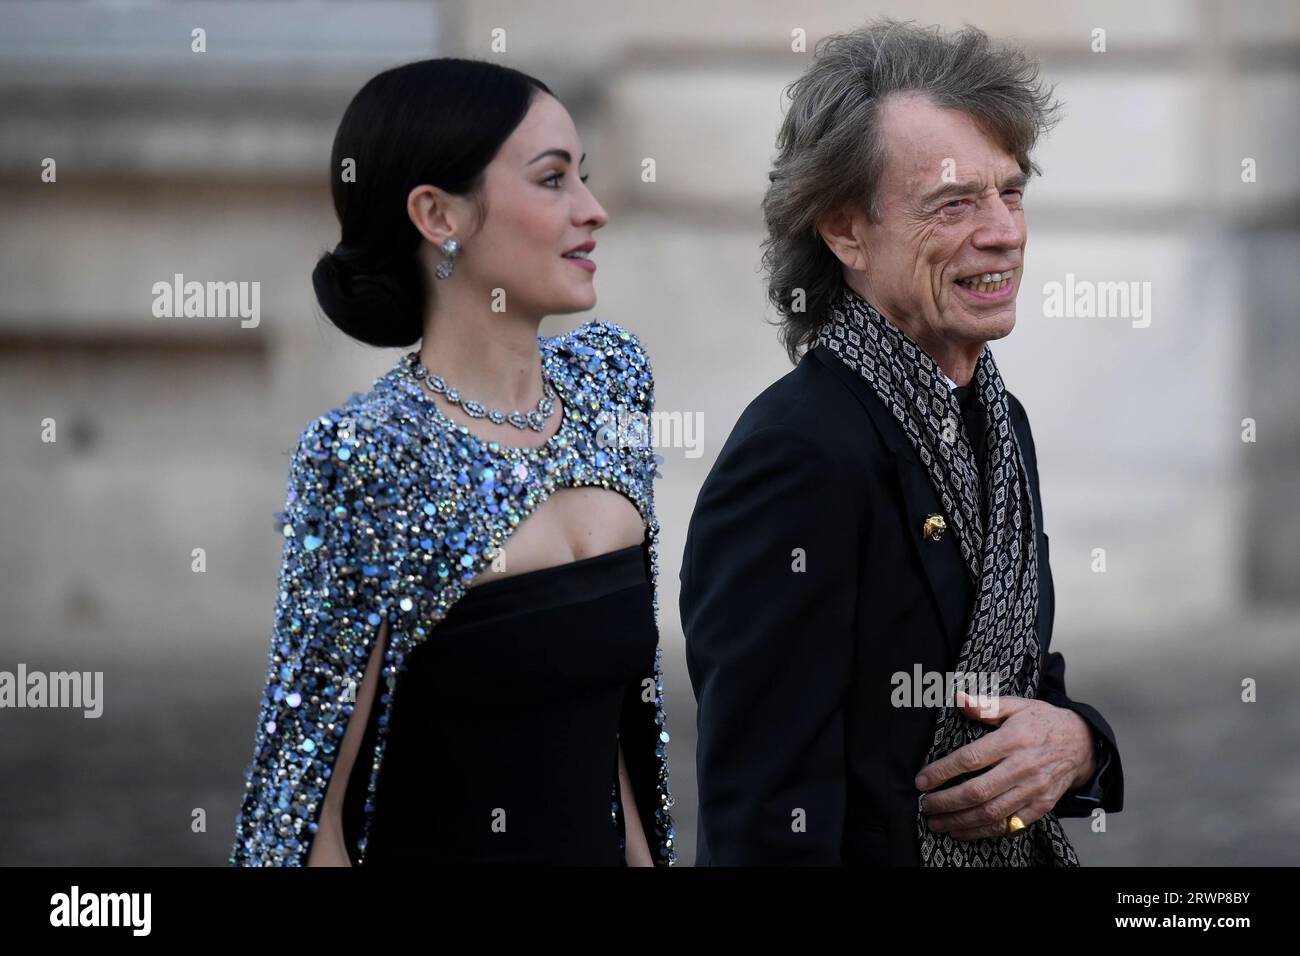 Melanie Hamrick und Mick Jagger besuchen das Staatsbankett im Schloss von Versailles, Paris, während des Staatsbesuchs in Frankreich. Bilddatum: Mittwoch, 20. September 2023. Stockfoto